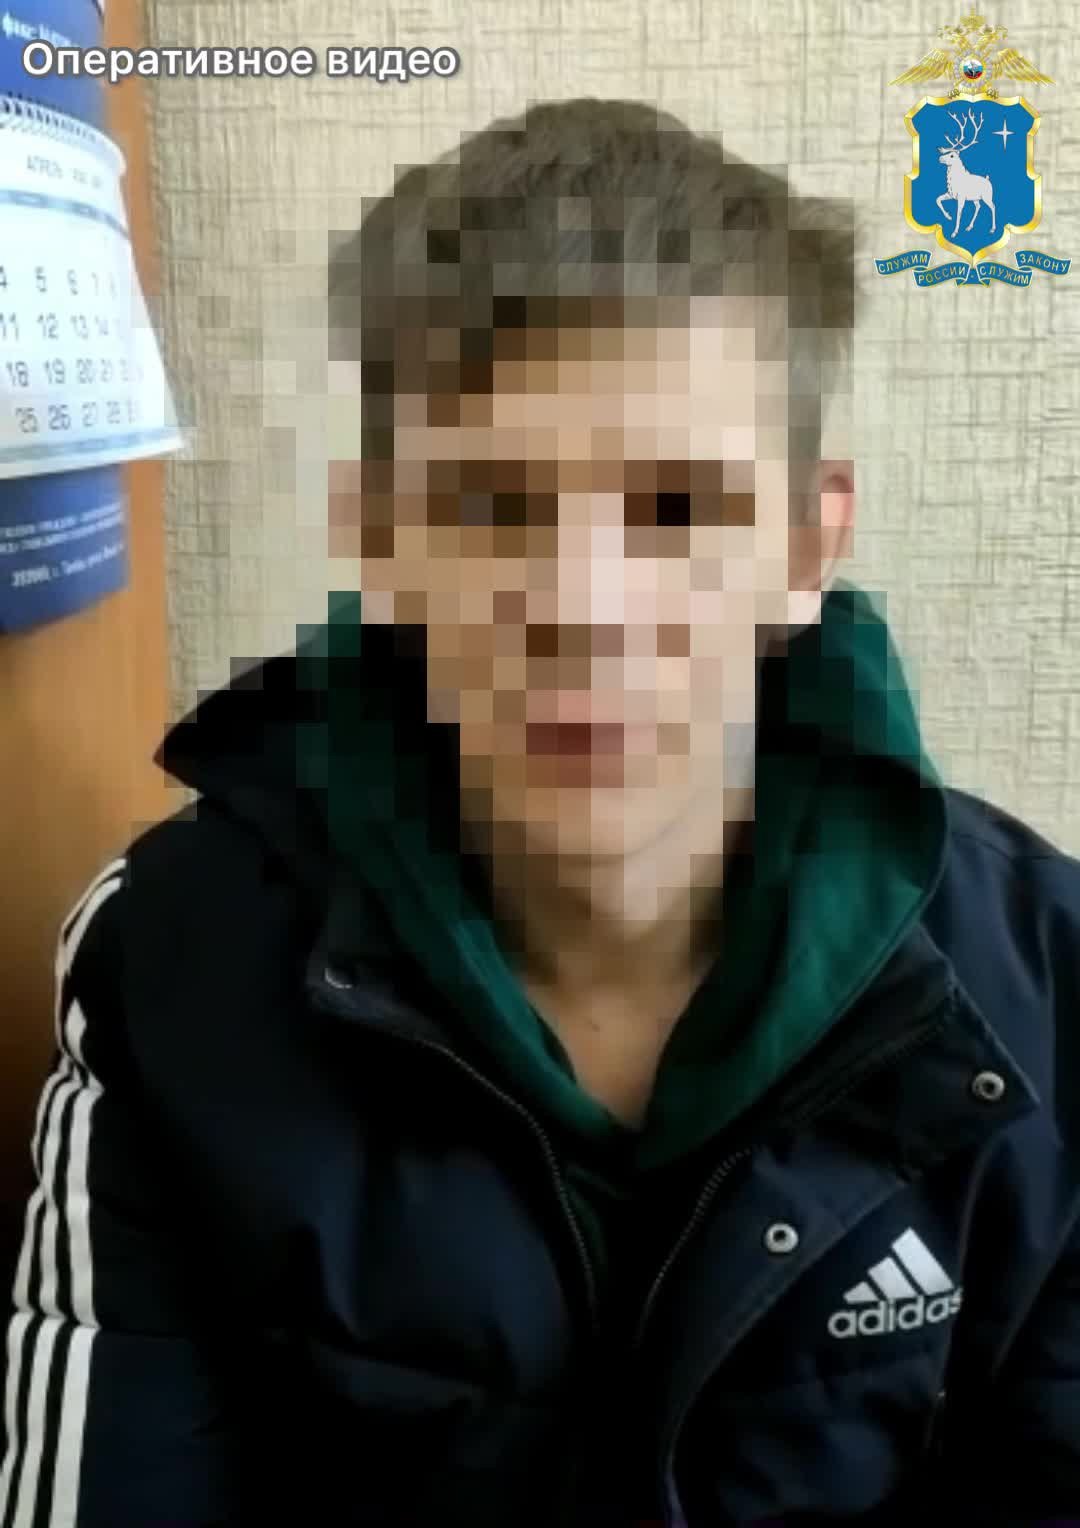 Сотрудники отдела уголовного розыска ОМВД России по Пуровскому району установили подозреваемого в мошенничестве